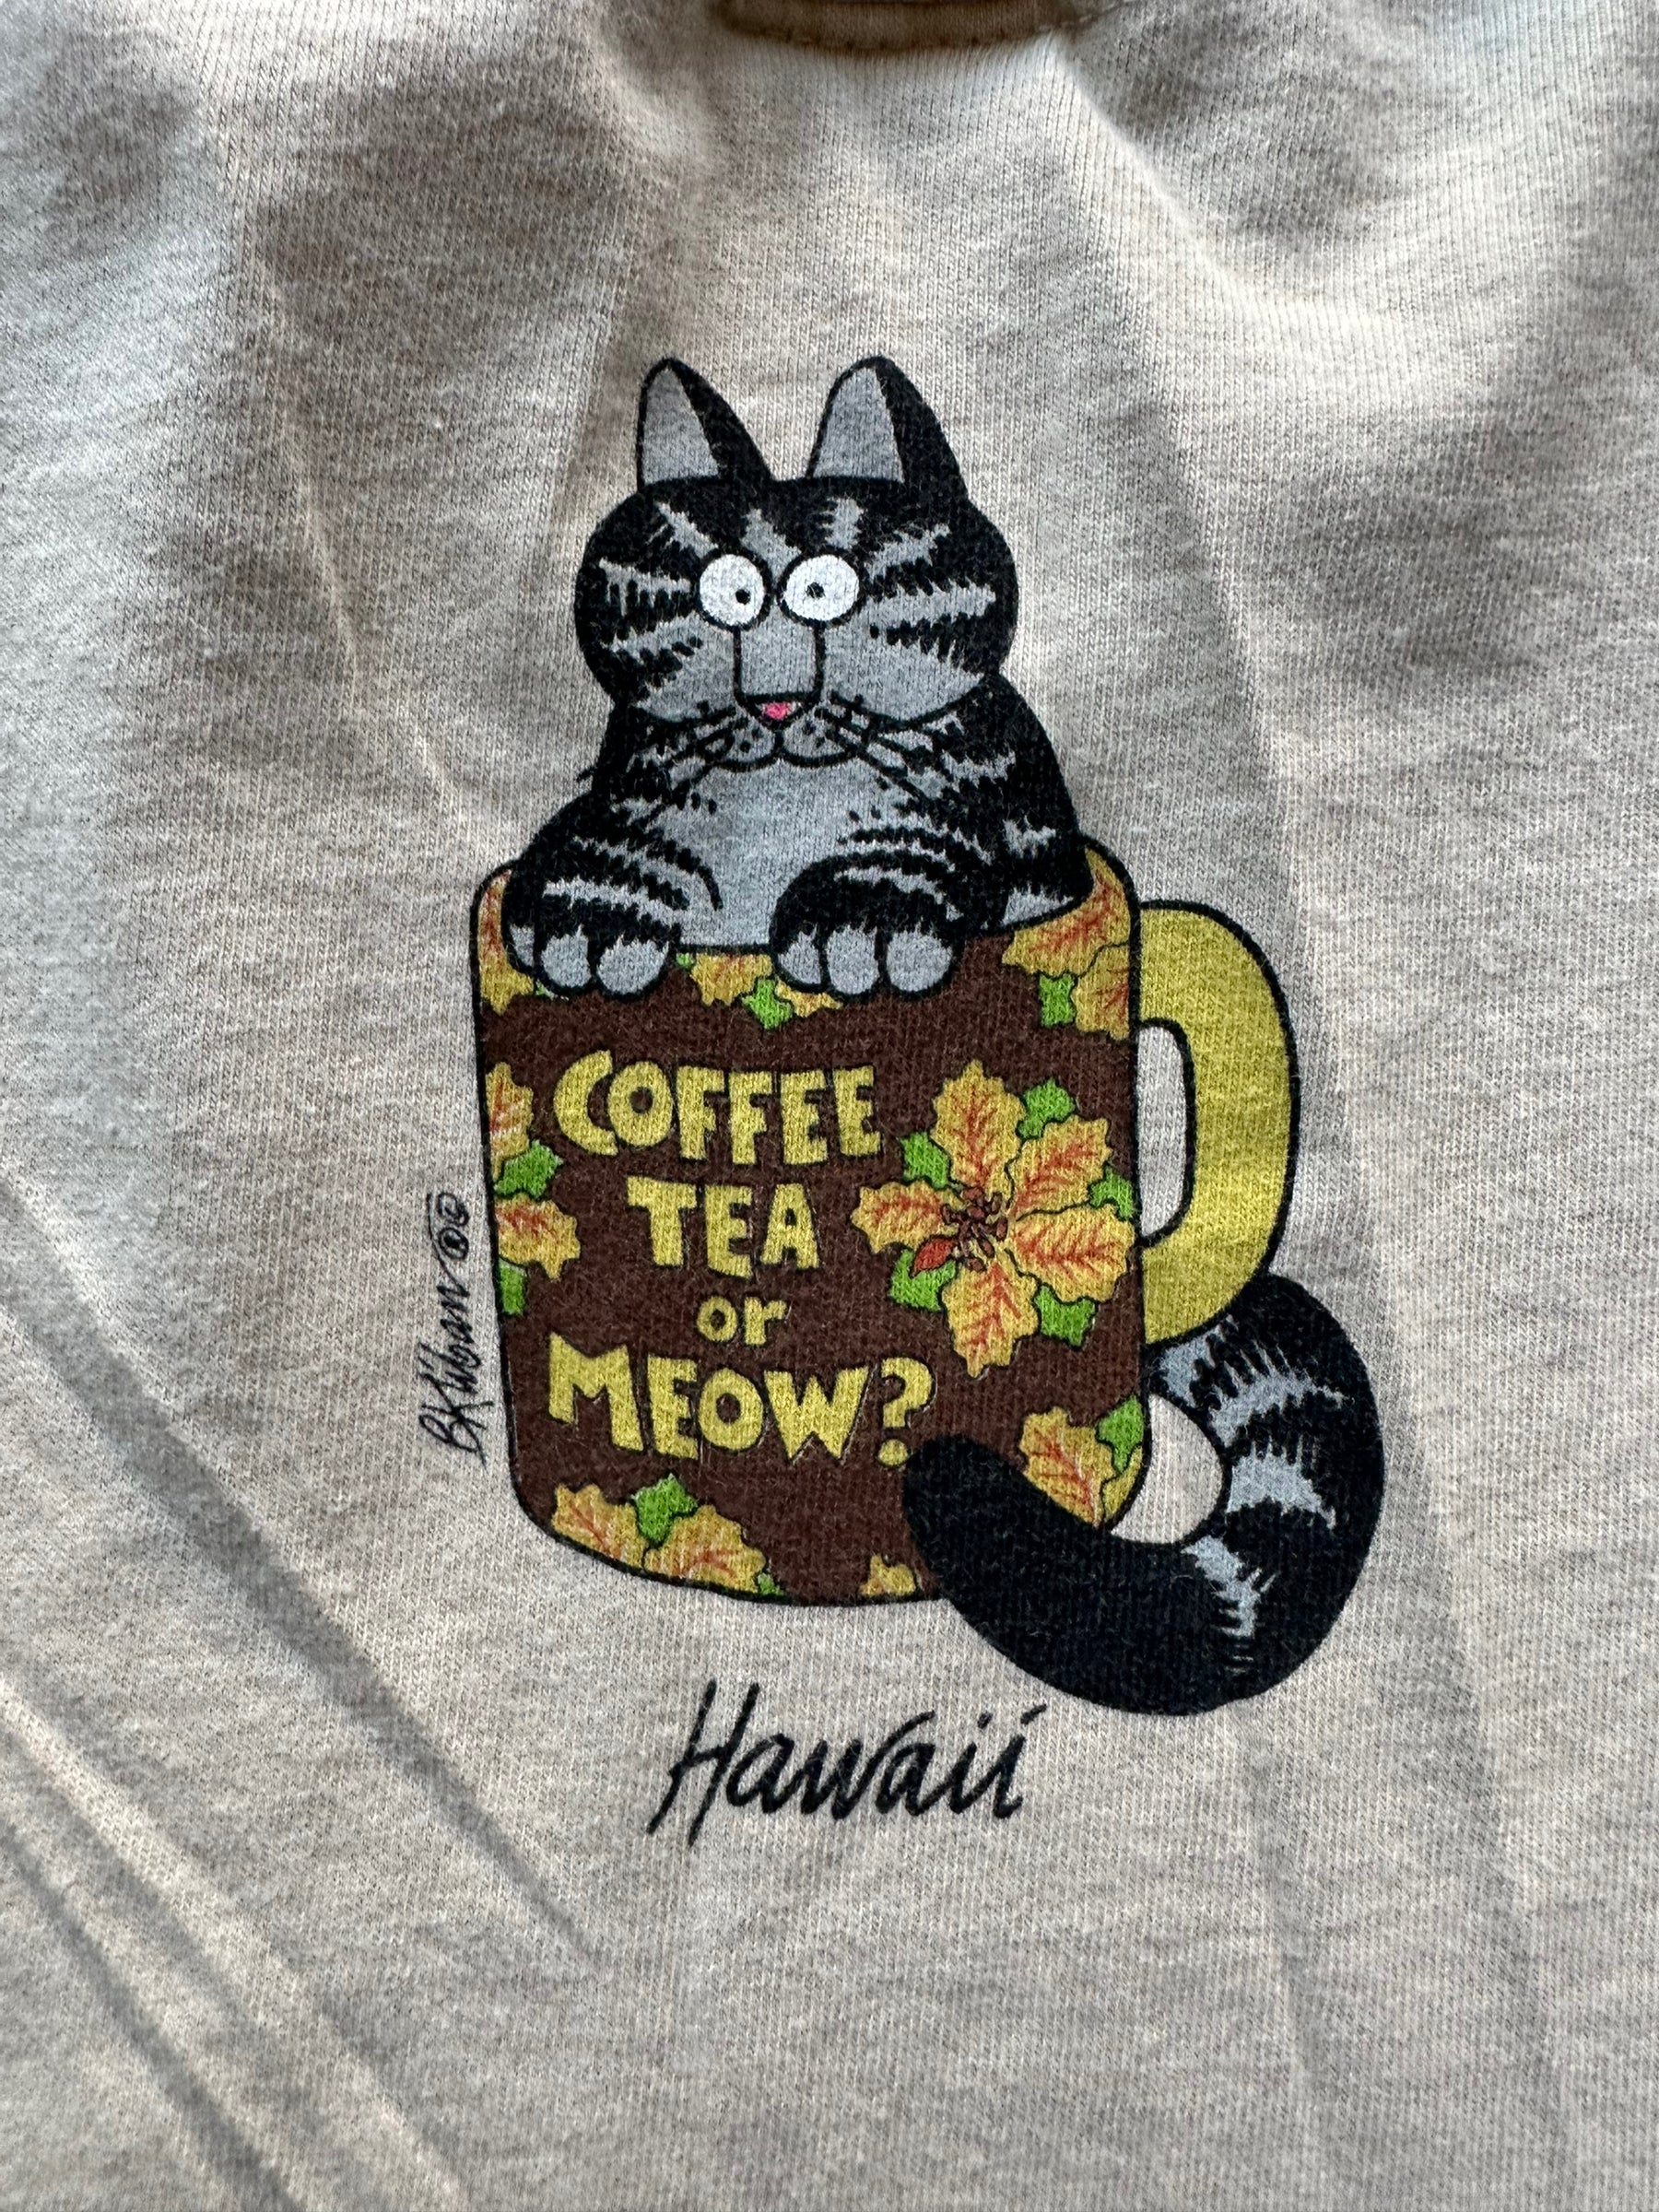 The Barn Owl Vintage Hawaii Graphic Tee Sz XL | Vintage T-shirts Seattle | Barn Owl Vintage Tees Seattle